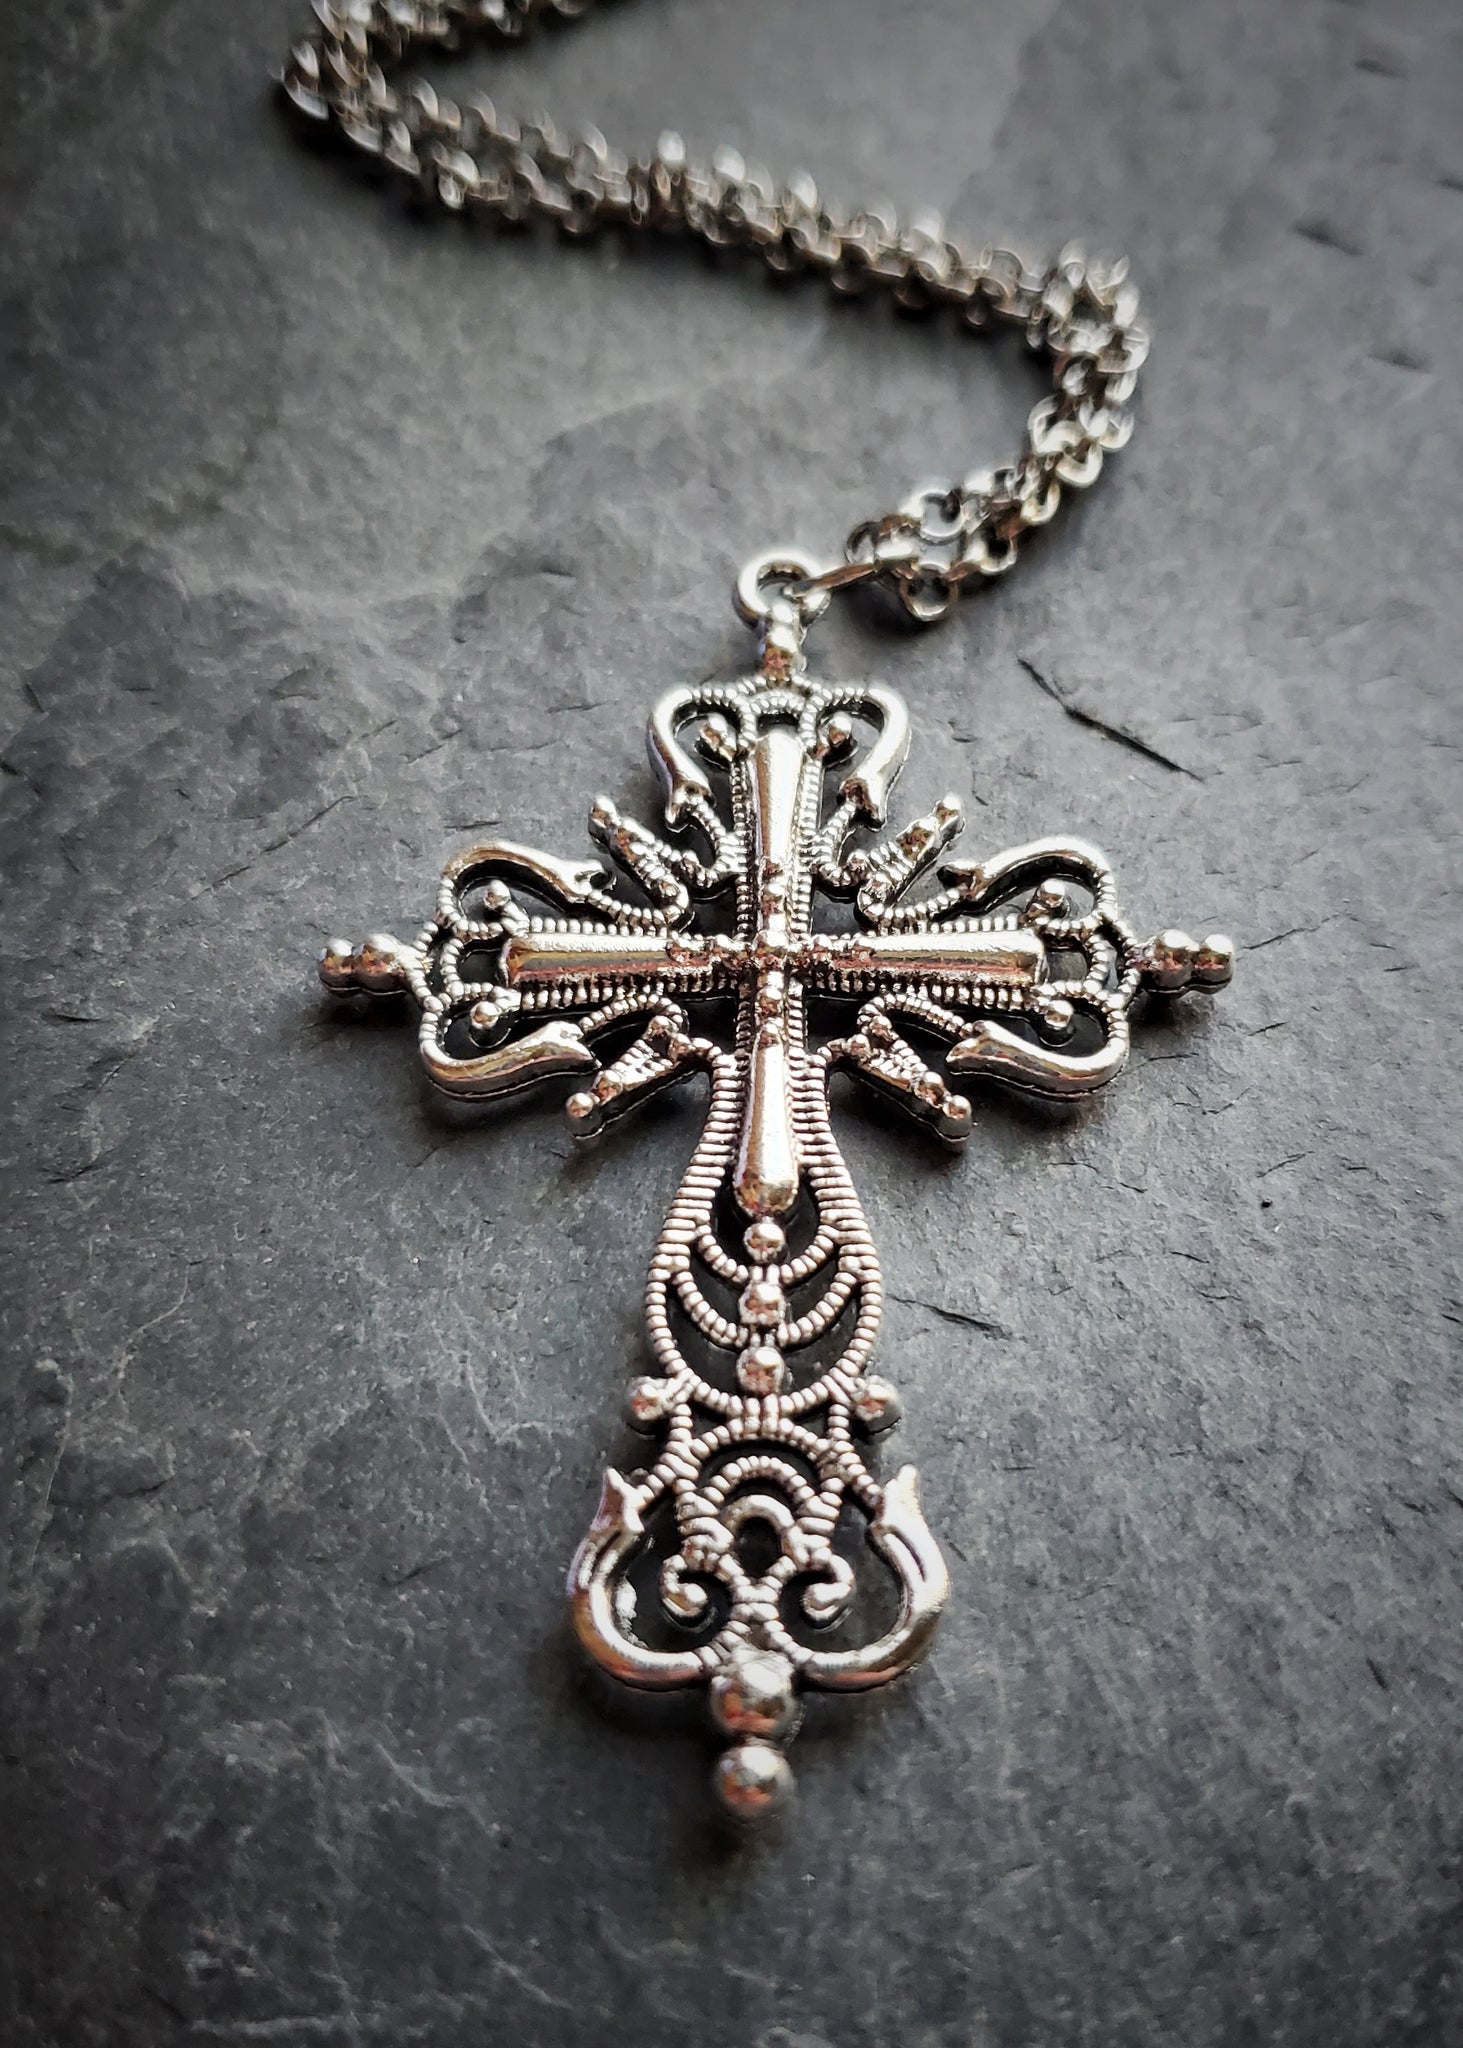 Large Ornate Black Cross Necklace Rockabilly Gothic Punk Emo Pendant  Crucifix | eBay